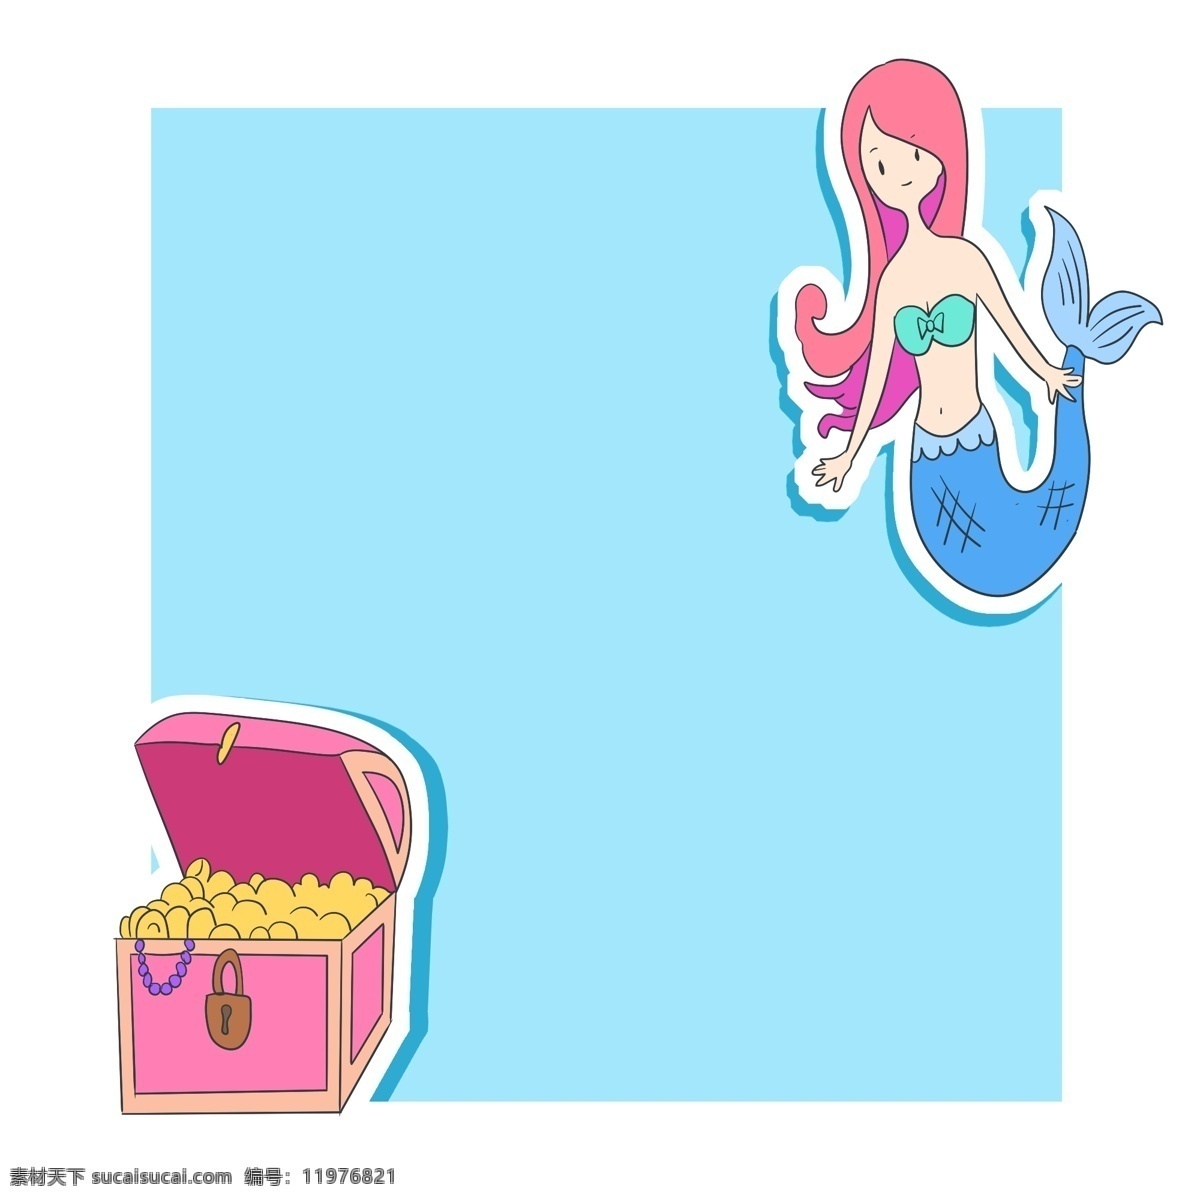 卡通 美人鱼 装饰 边框 美人鱼边框 粉色的宝箱 蓝色边框 创意边框 可爱的边框 文本框 卡通边框插画